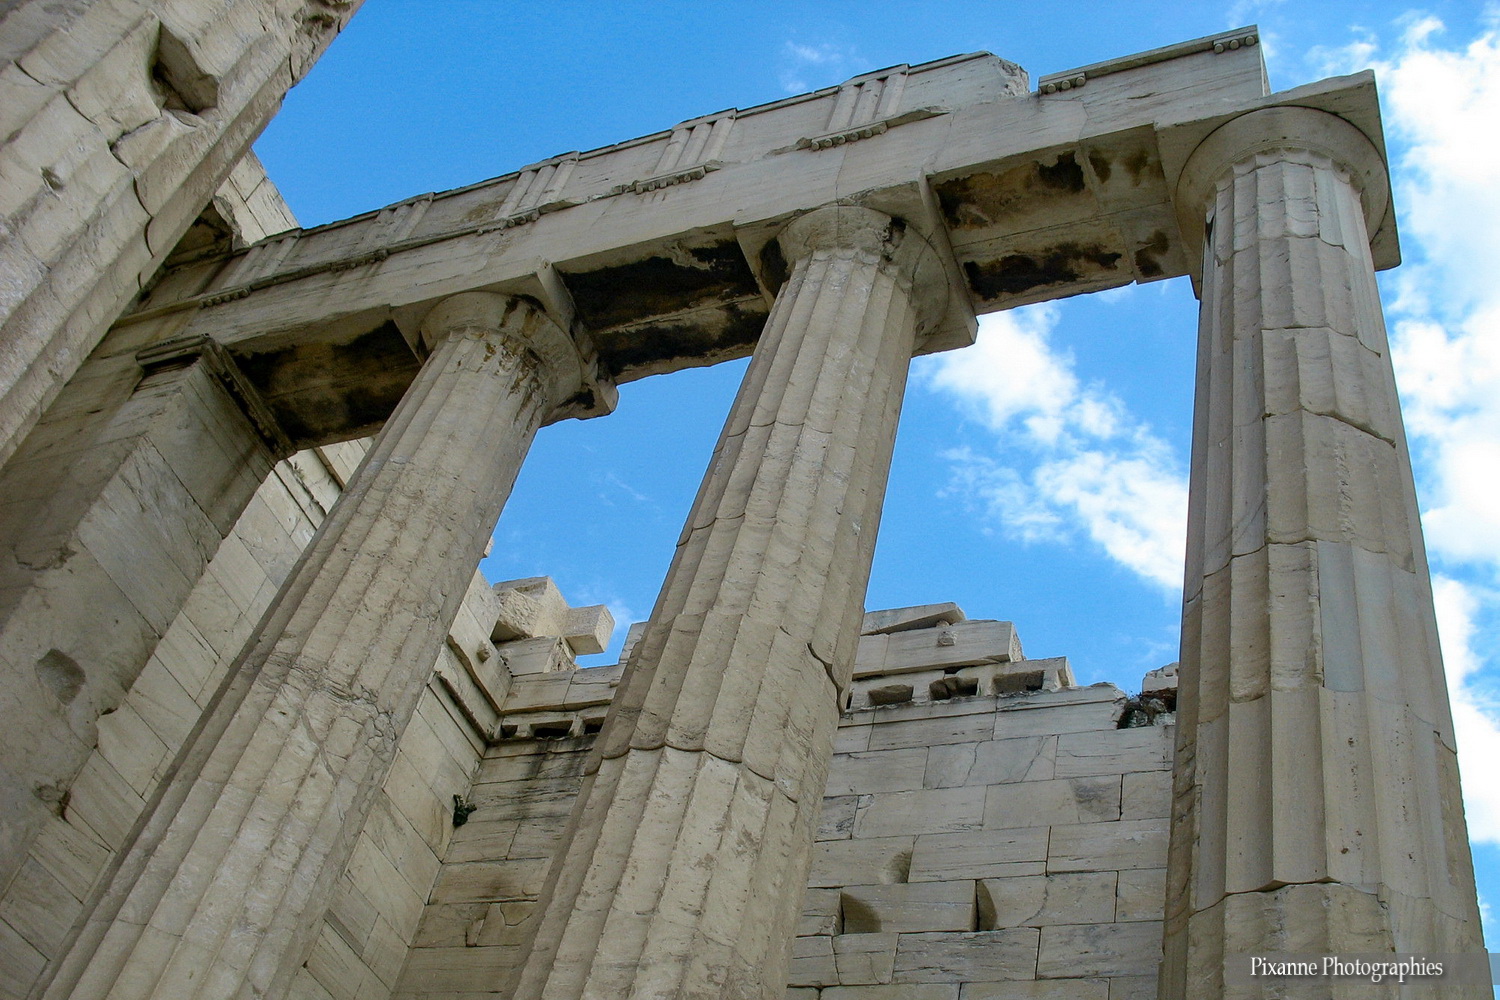 Europe, Grèce, Attique, Athènes, Acropole, Parthénon, Souvenirs de Voyages, Pixanne Photographies